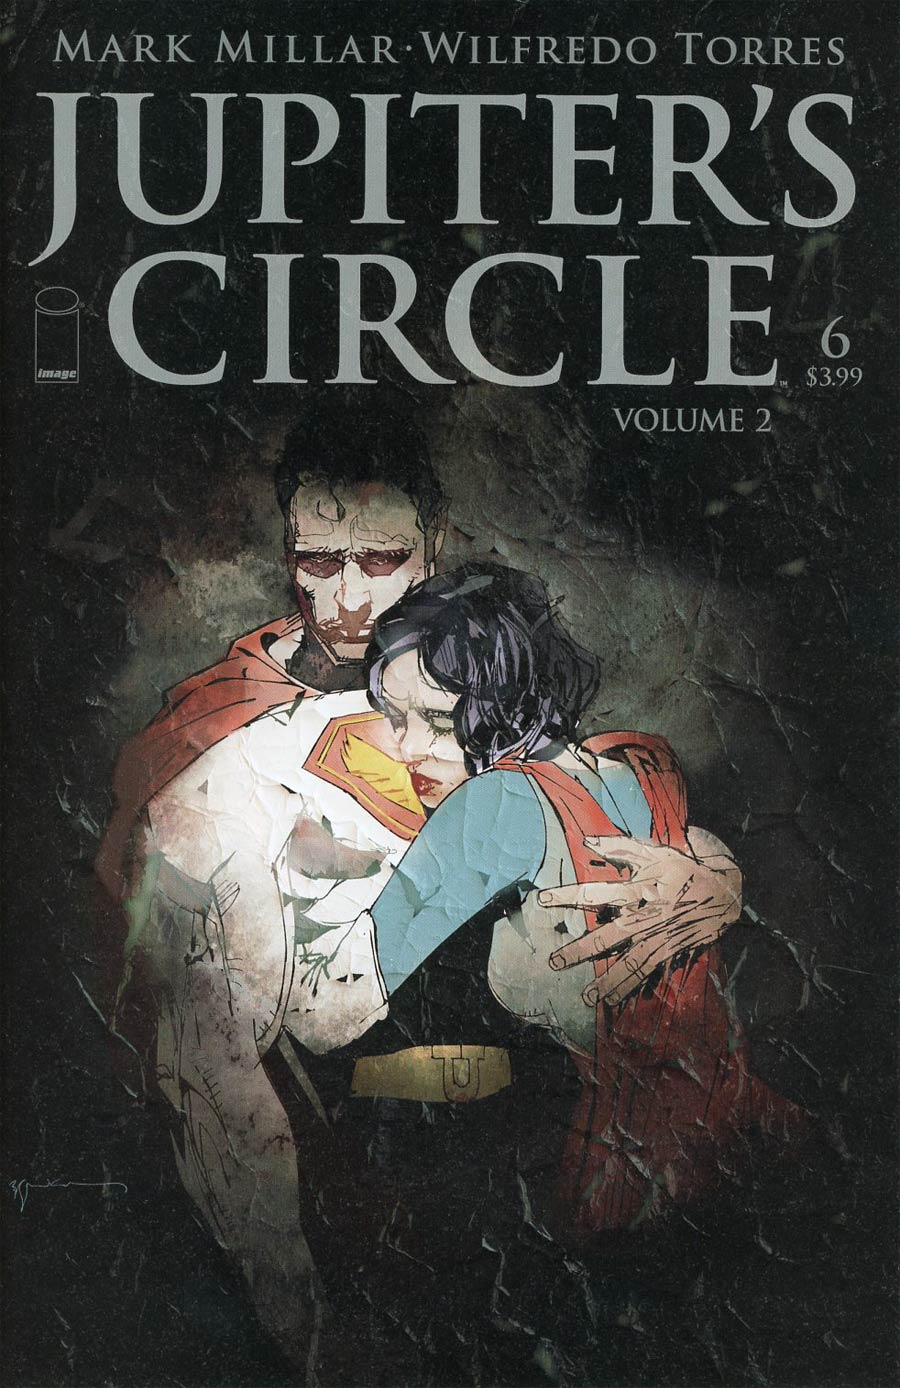 Jupiters Circle Vol 2 #6 Cover A Bill Sienkiewicz